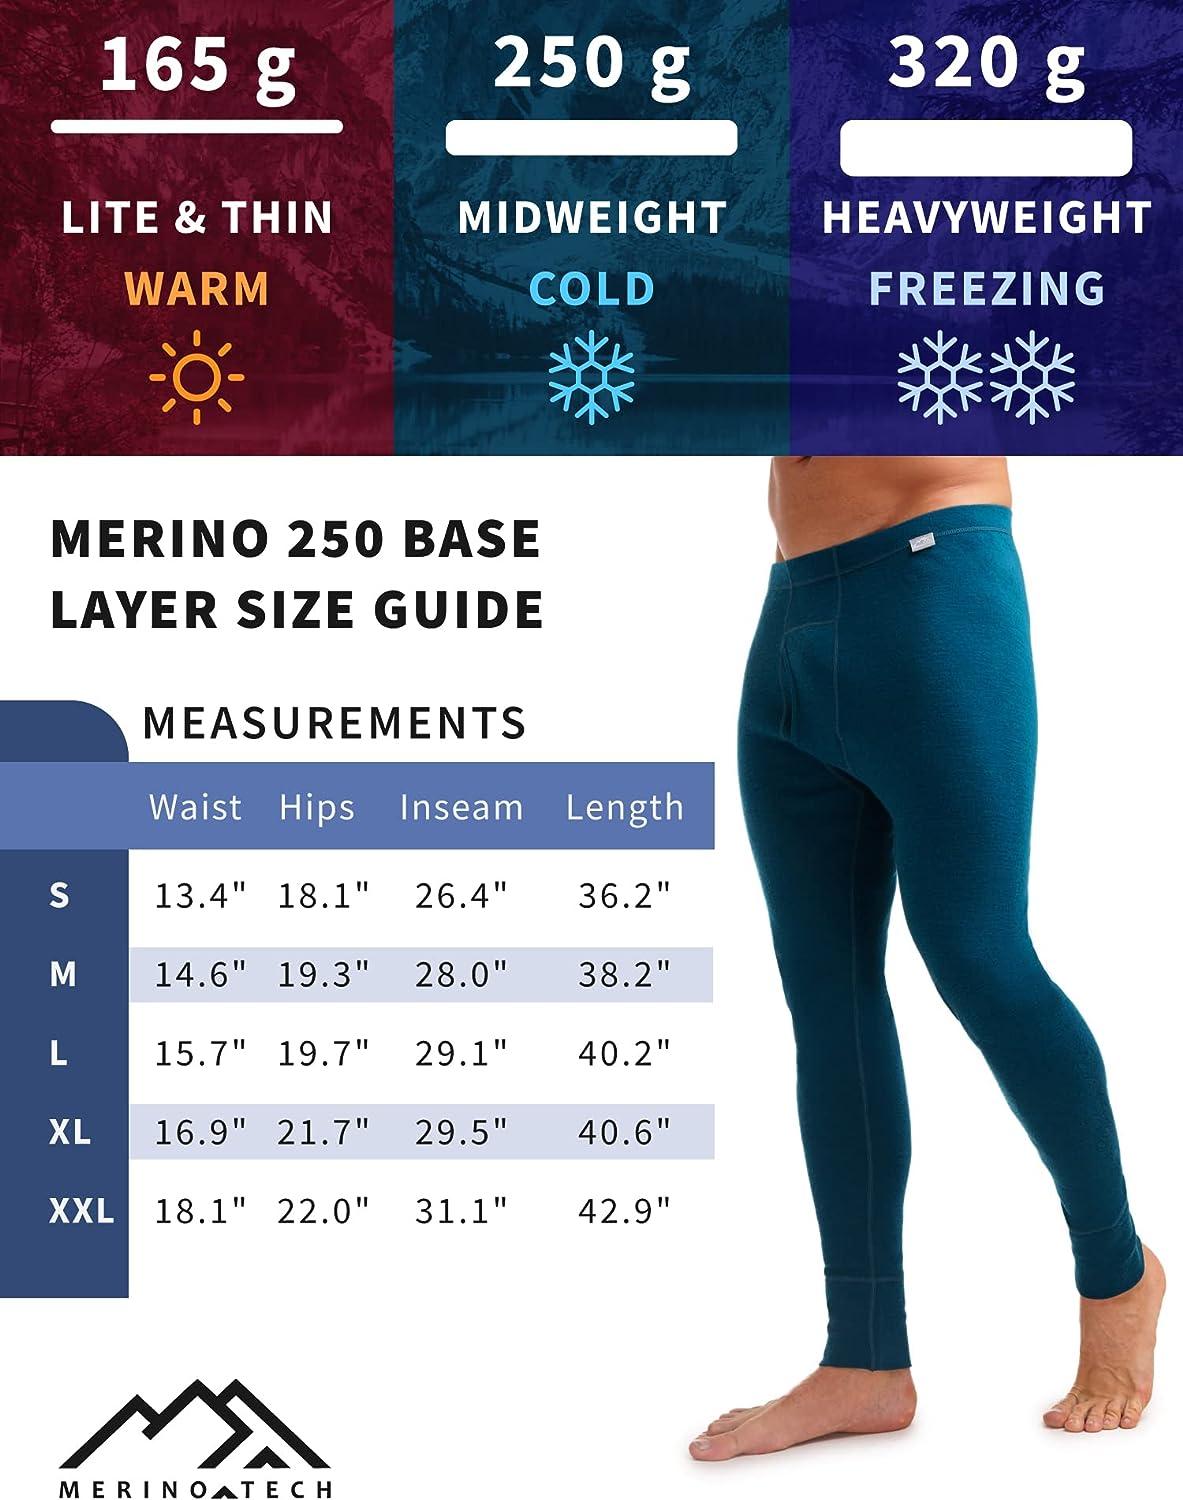 Men's Warm Long Sleeve Top - 100% Merino Wool - Thermal Underwear